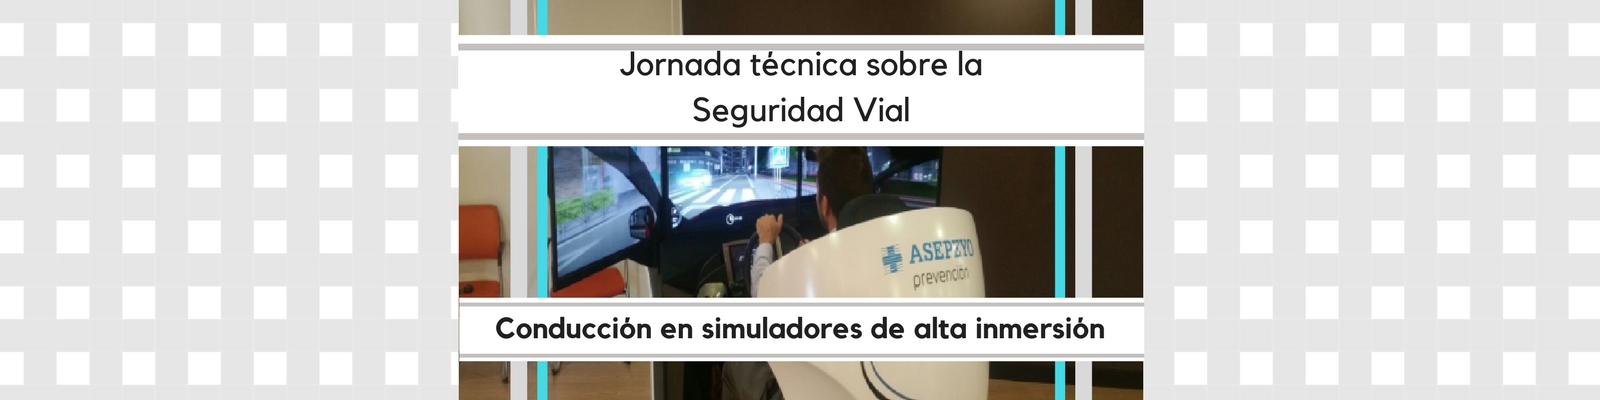 Jornada técnica sobre la Seguridad Vial: Conducción en simuladores de alta inmersión